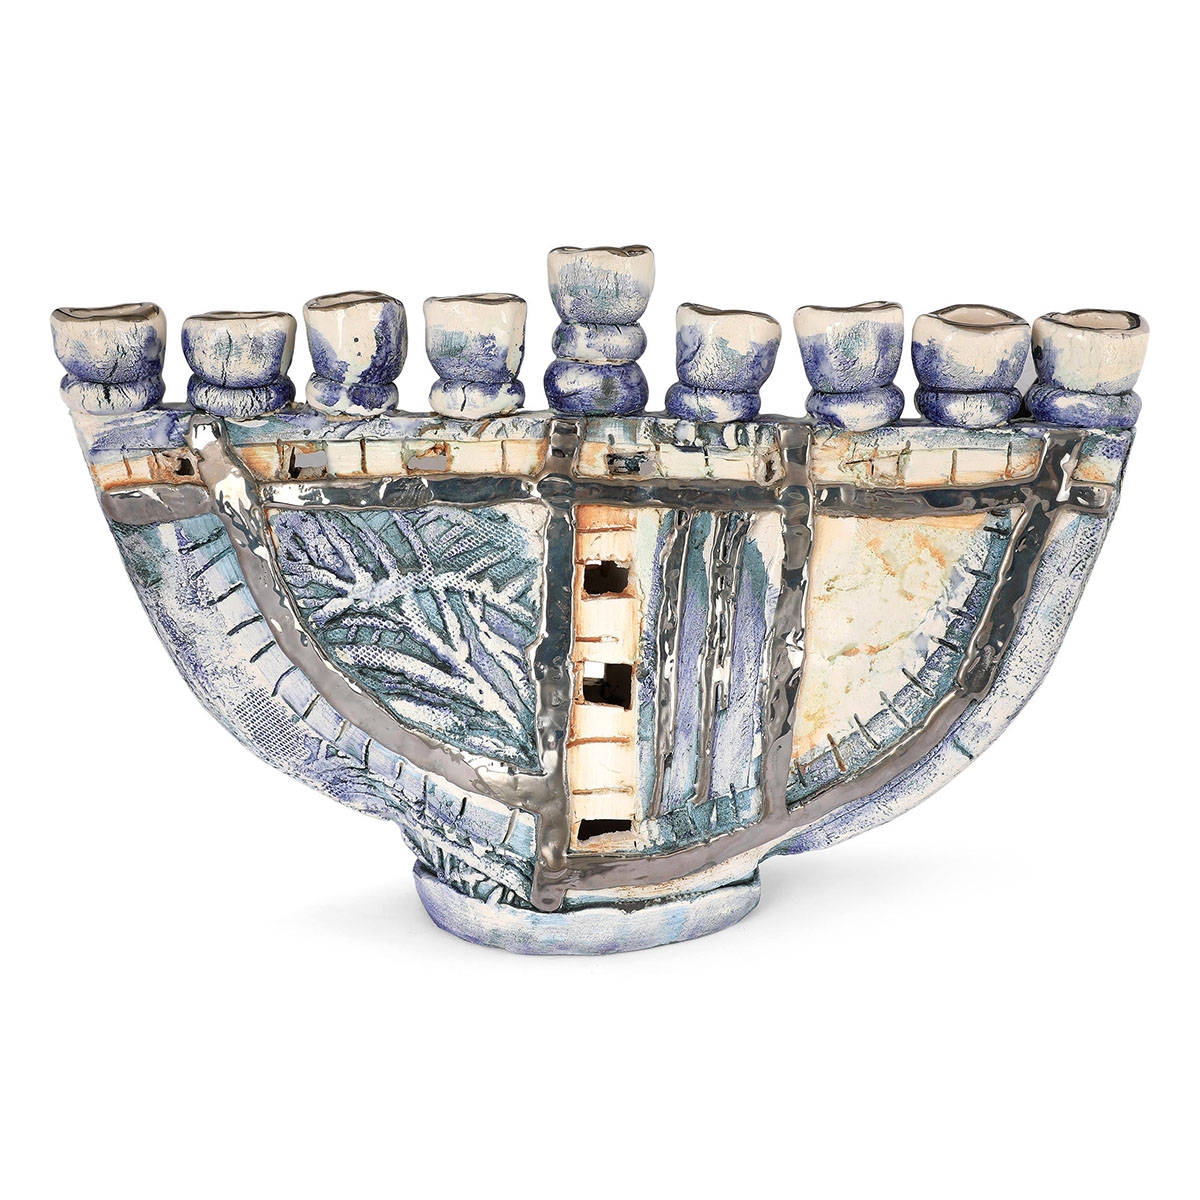 Handmade Ceramic Hanukkah Menorah With Sterling Silver Coating - 1